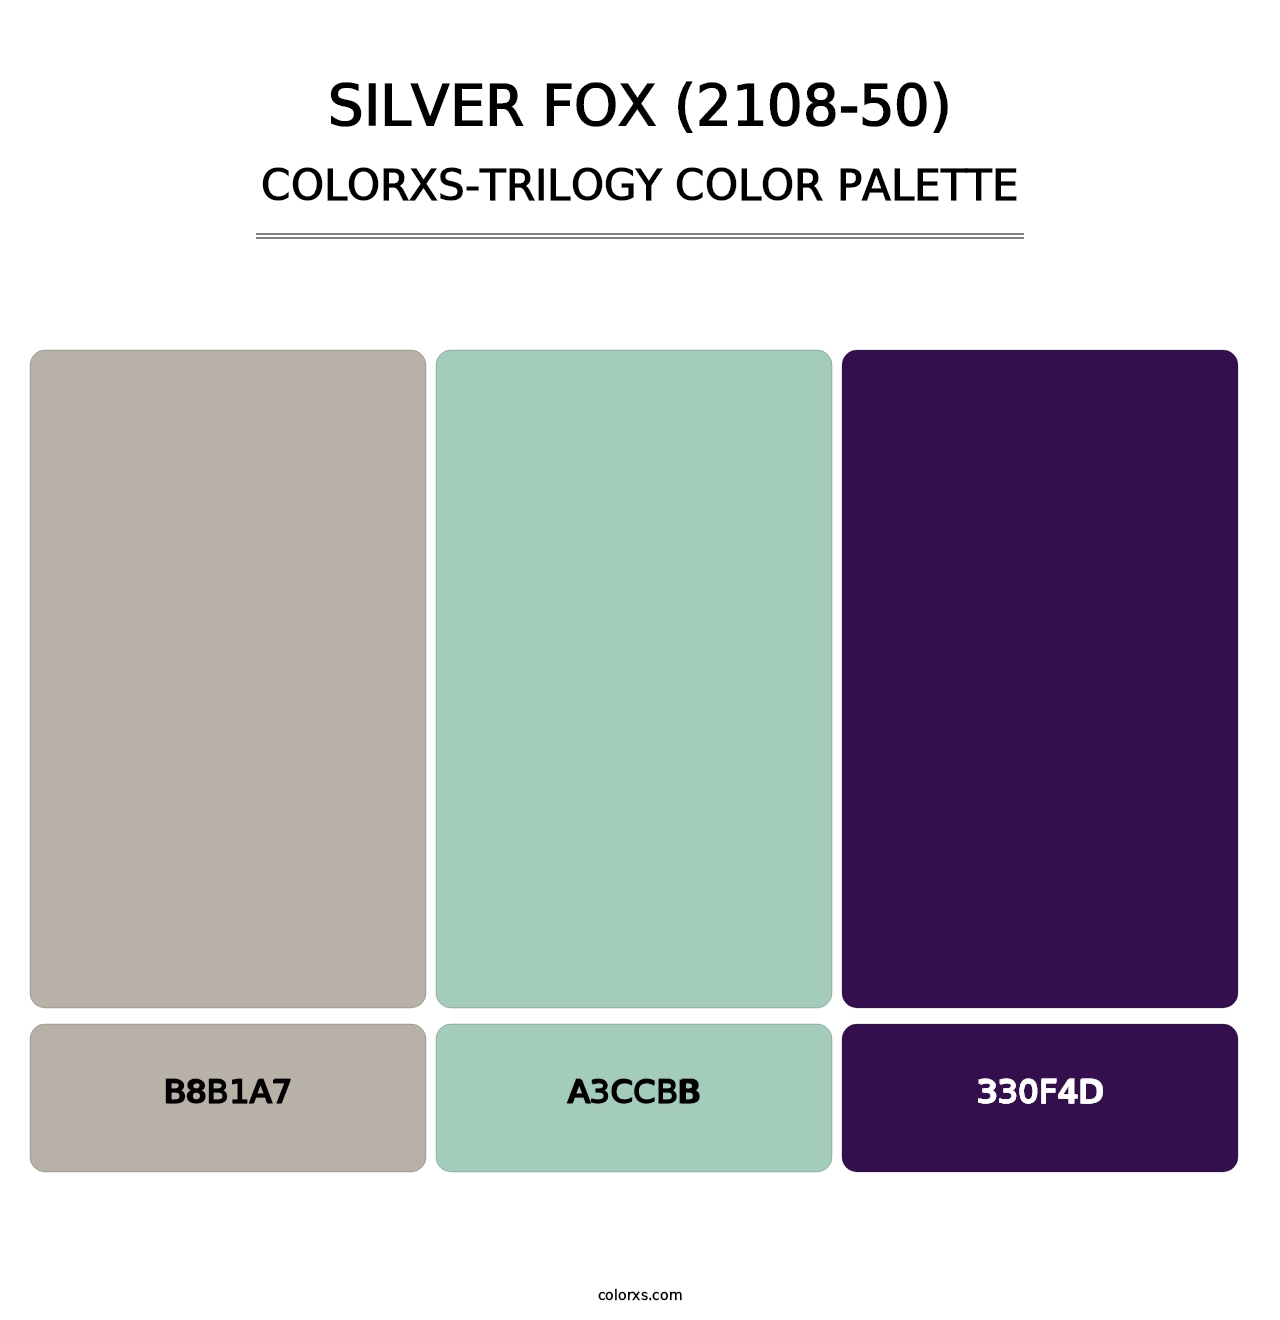 Silver Fox (2108-50) - Colorxs Trilogy Palette